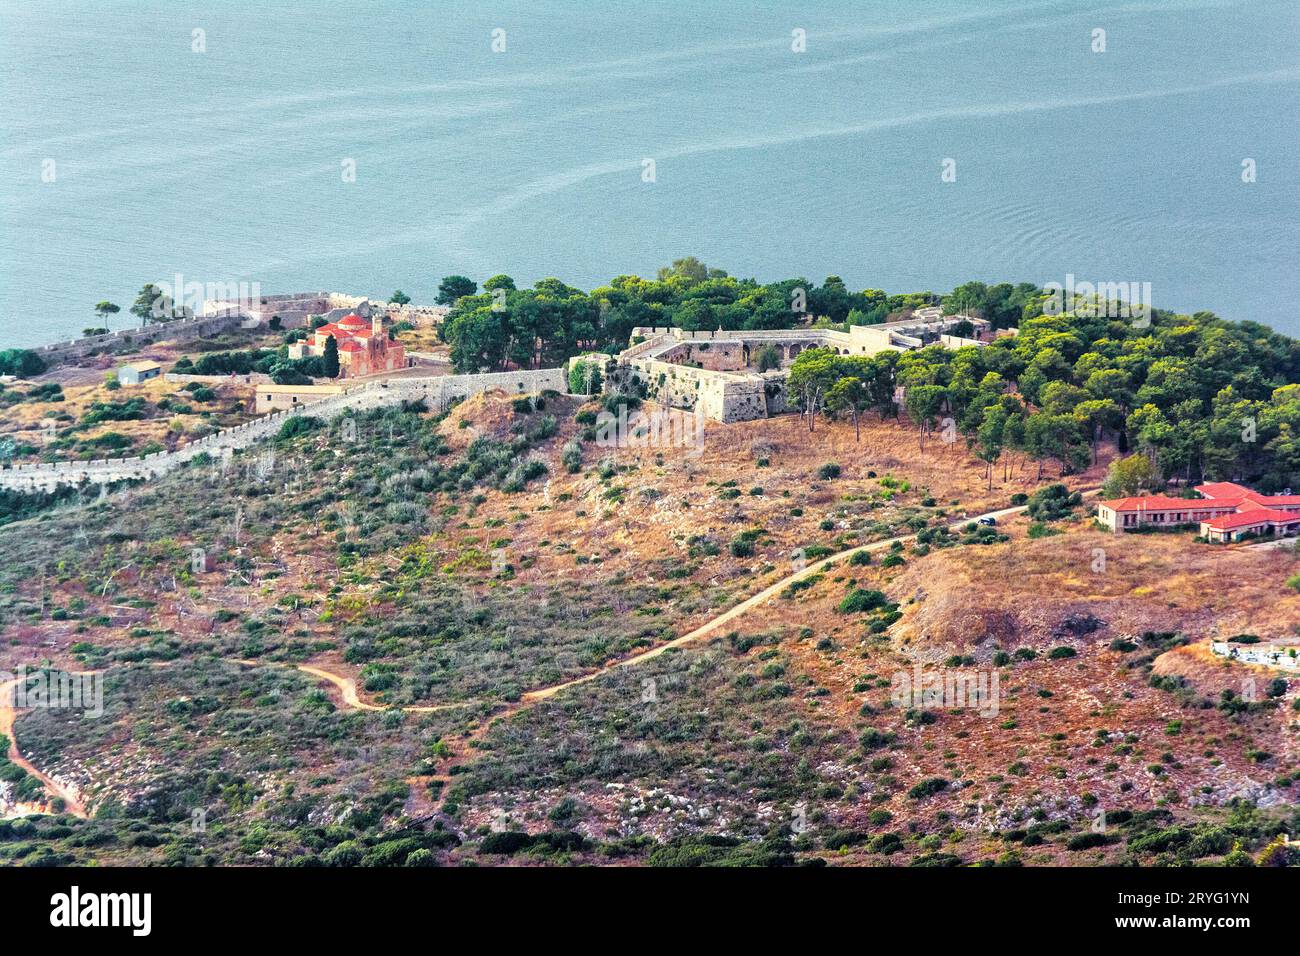 Blick auf die ikonische mittelalterliche Burg von Pylos im Herzen der Präfektur Messenia, Peloponnes, Griechenland. Stockfoto